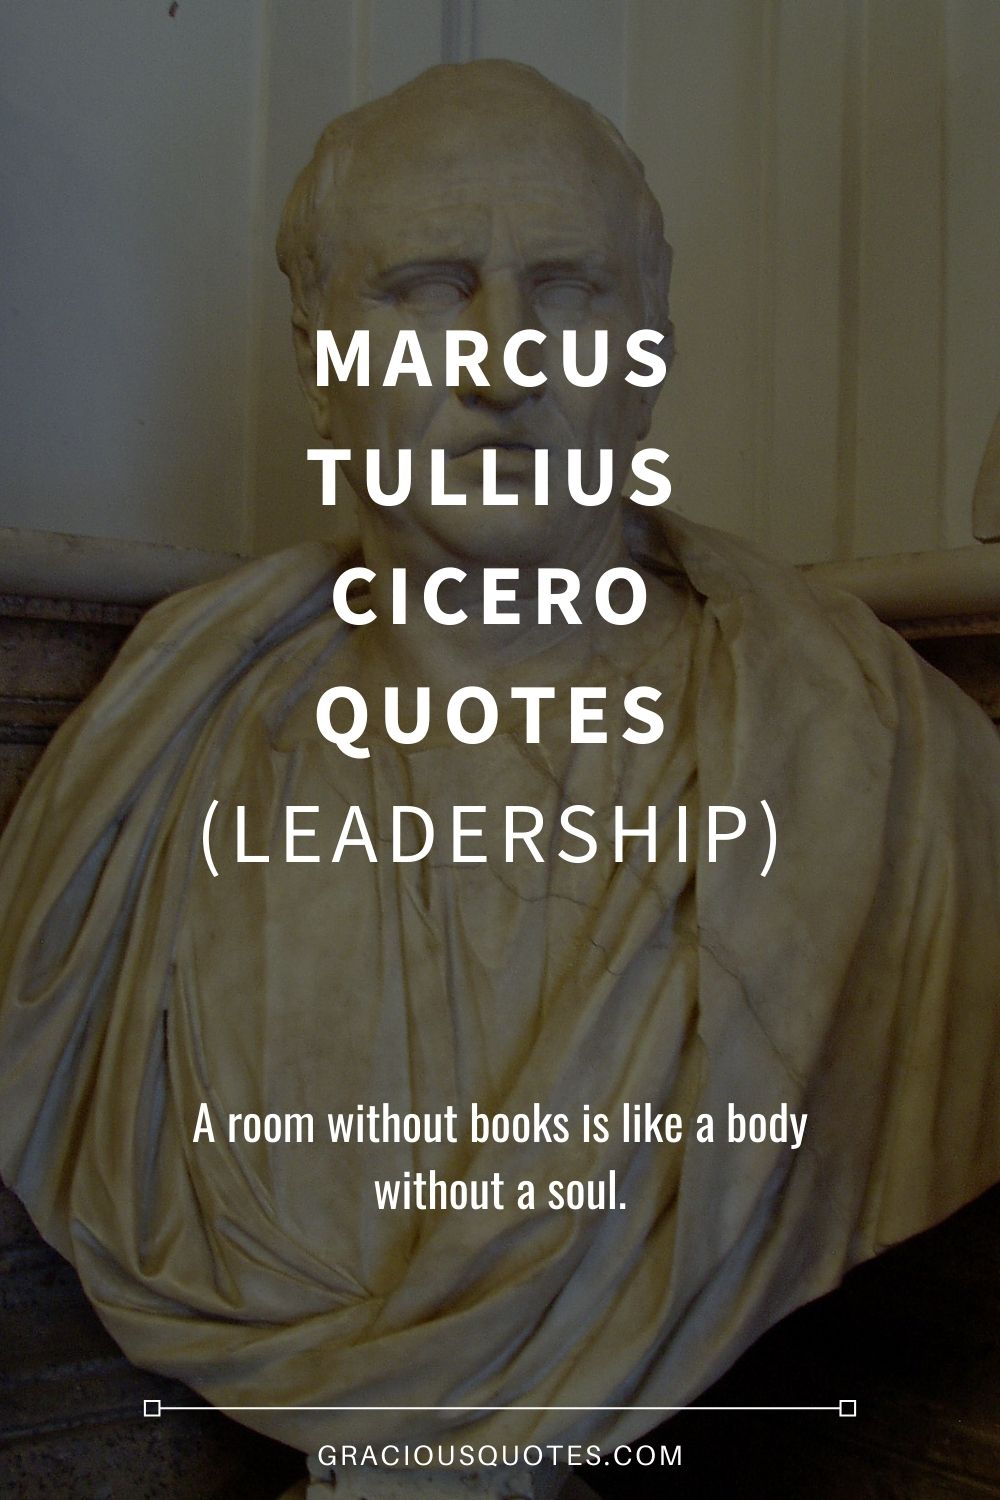 Marcus Tullius Cicero Quotes (LEADERSHIP) - Gracious Quotes